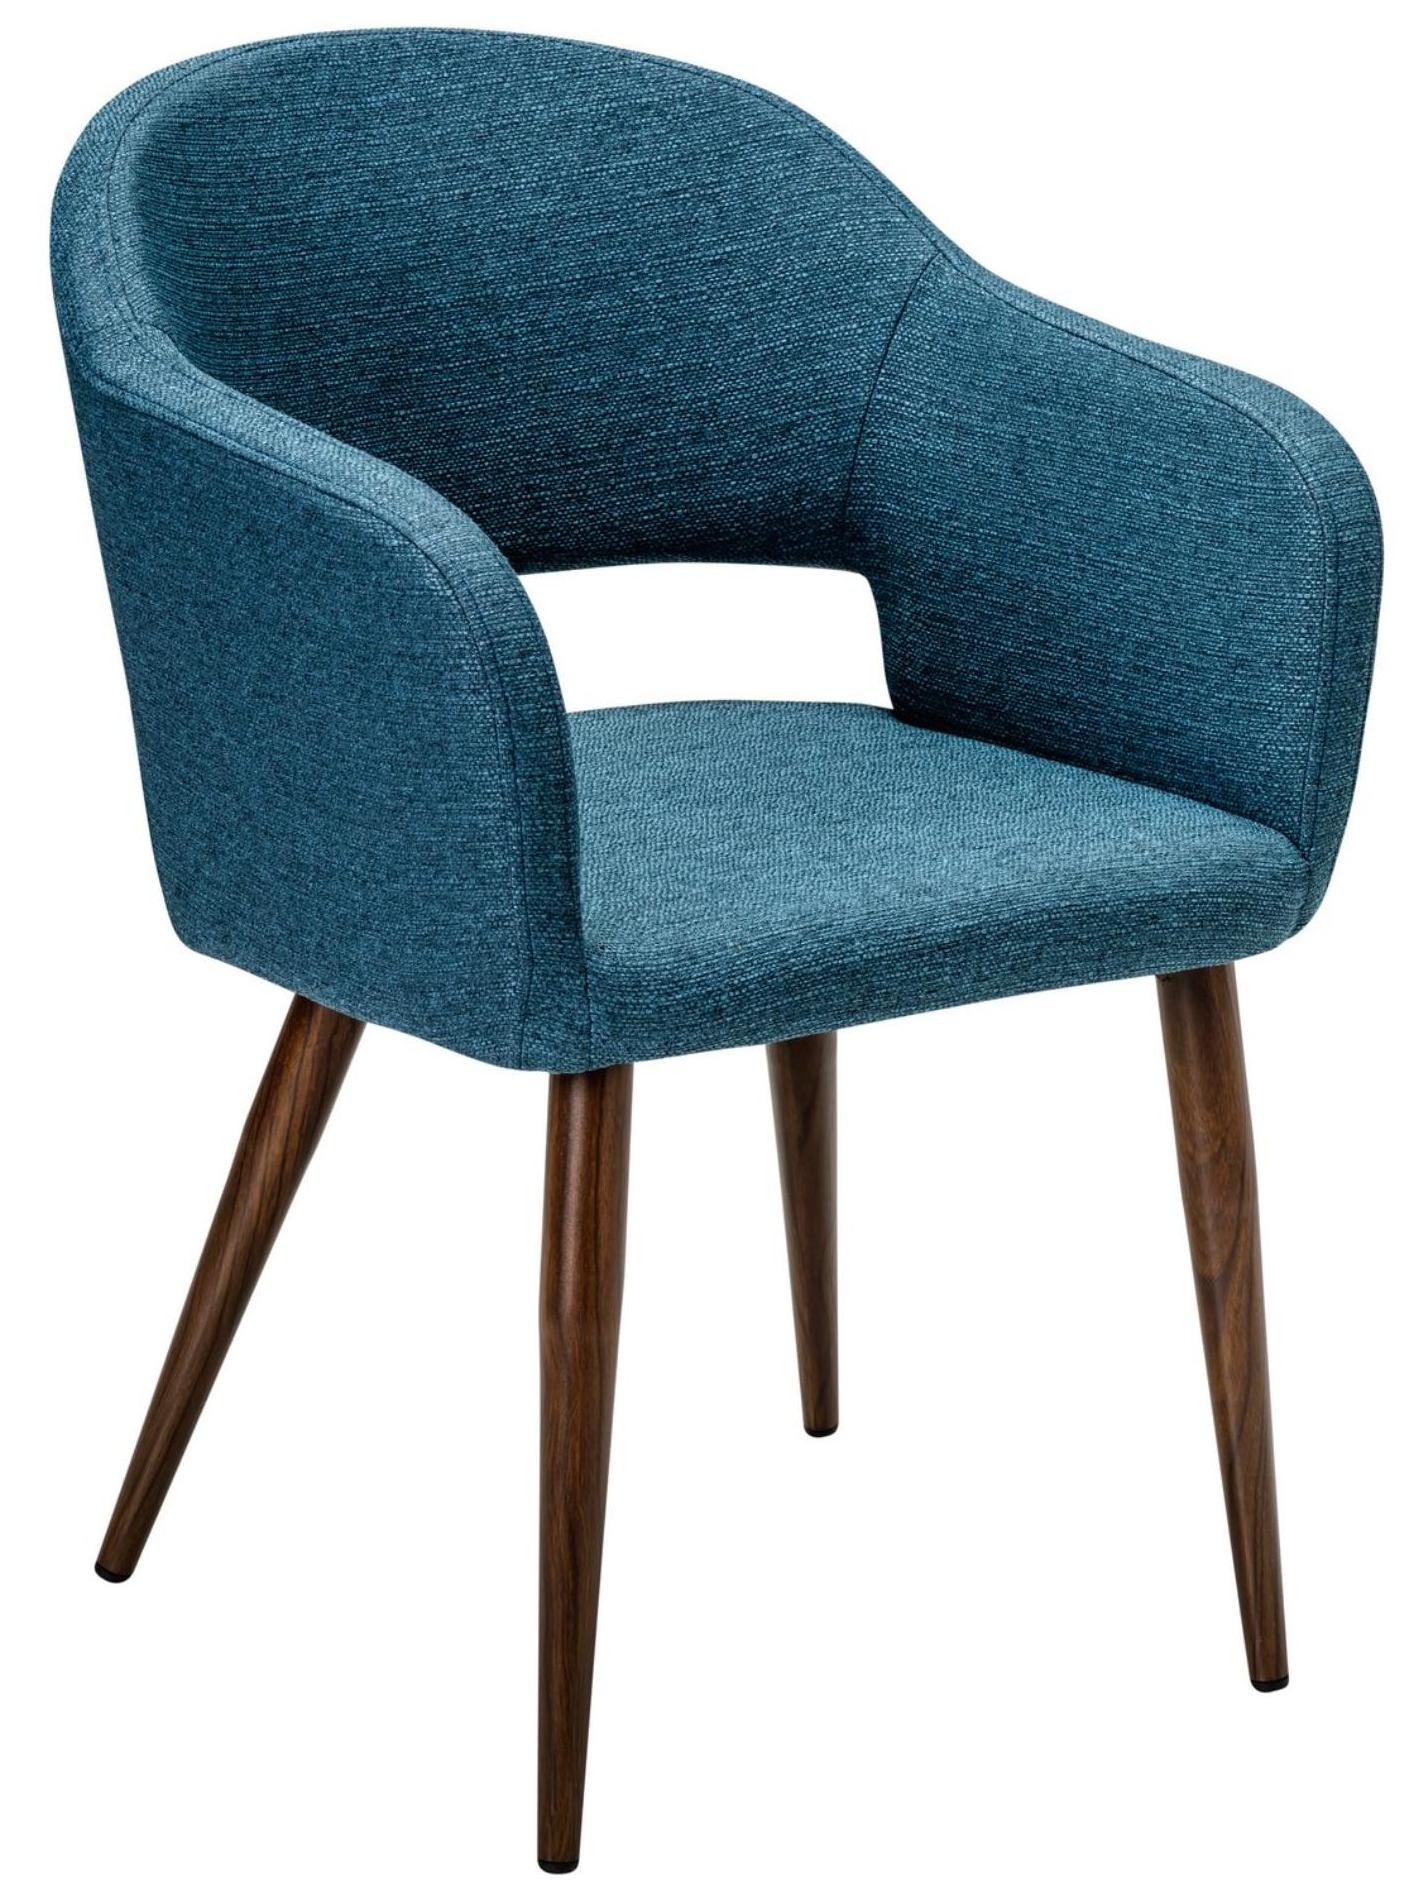 Кресло R-Home Oscar, Сканди, размер 60x59x77.5 см, цвет: Блю Арт Темный Орех(41011851_БлюАртТОрех)41011851_БлюАртТОрех